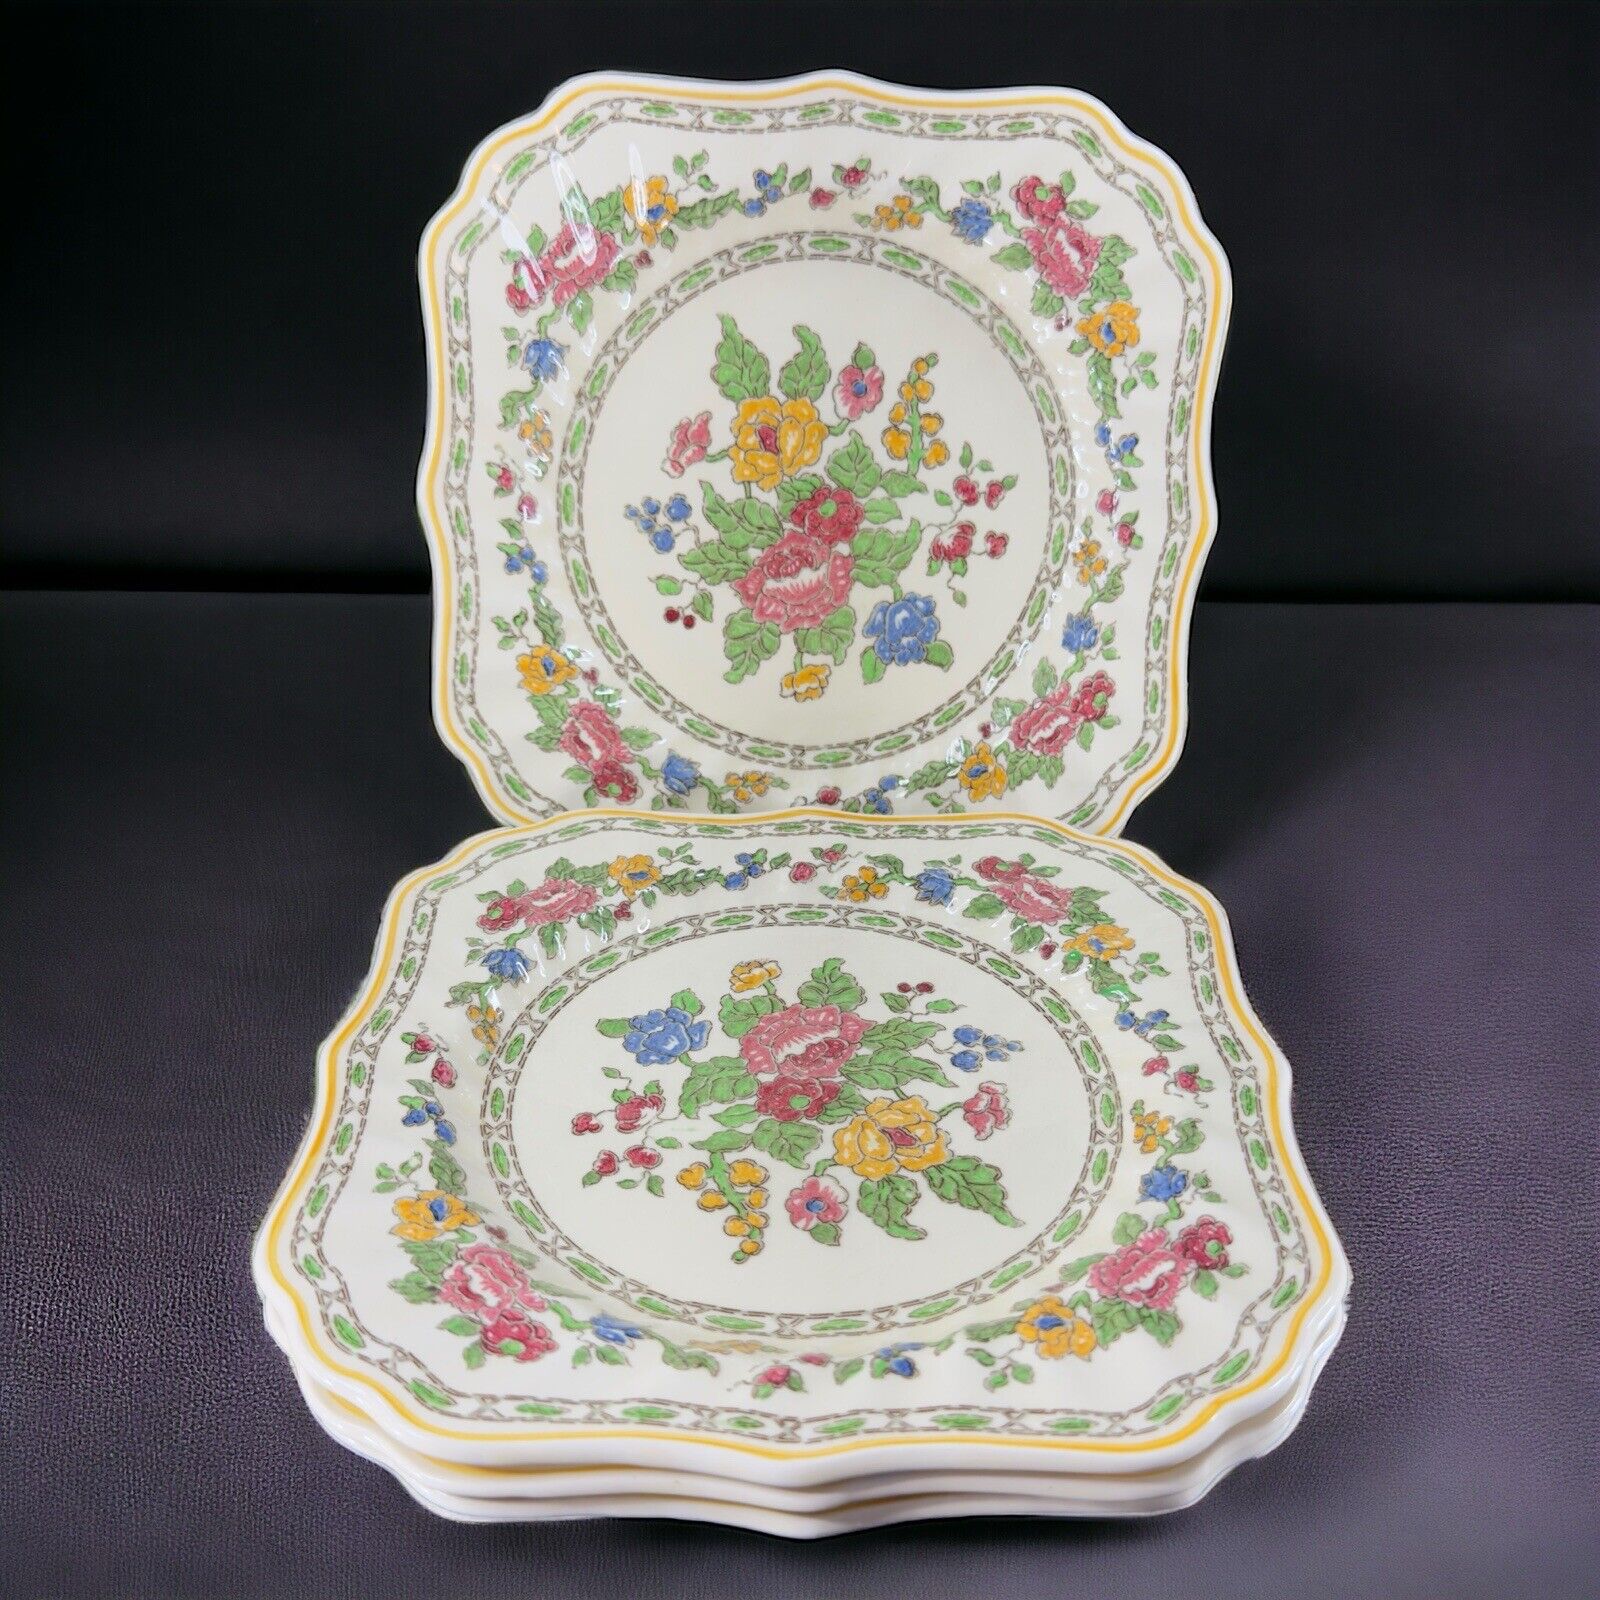 Antique Royal Doulton The Cavendish Porcelain Square Dish Plate England Set 4